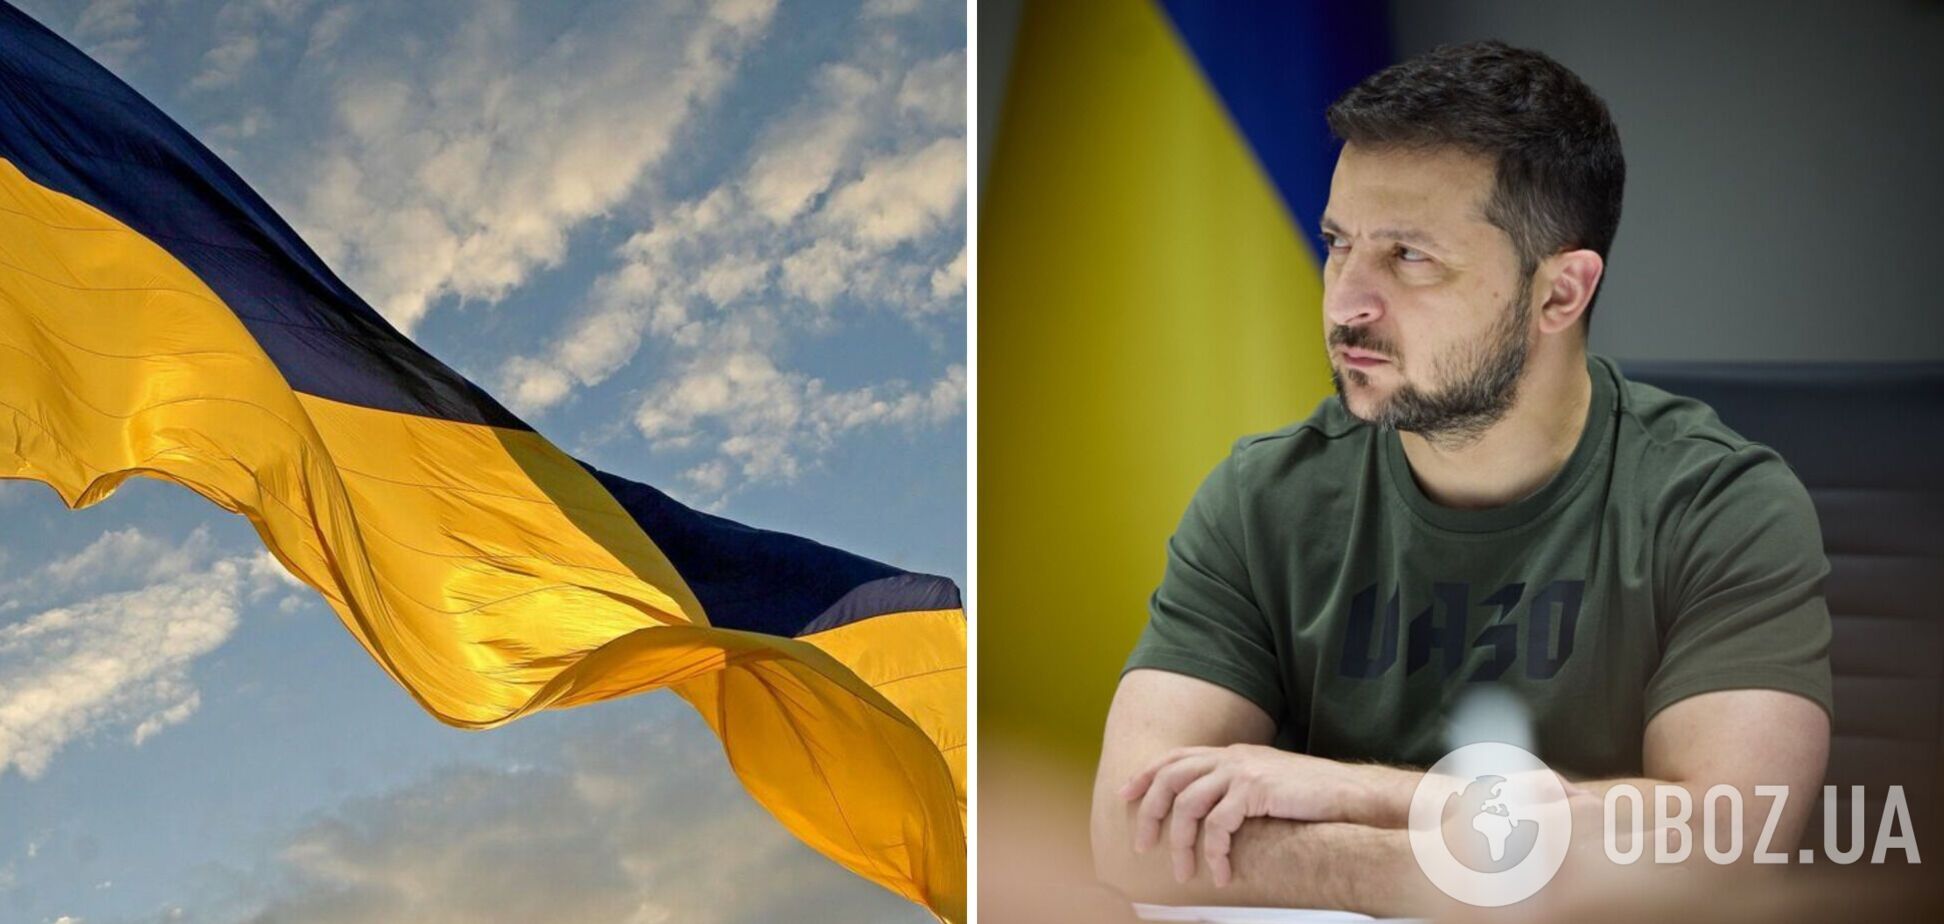 Український прапор став глобальним символом сміливості, а українці об’єднали світ навколо справжніх цінностей, – Зеленський